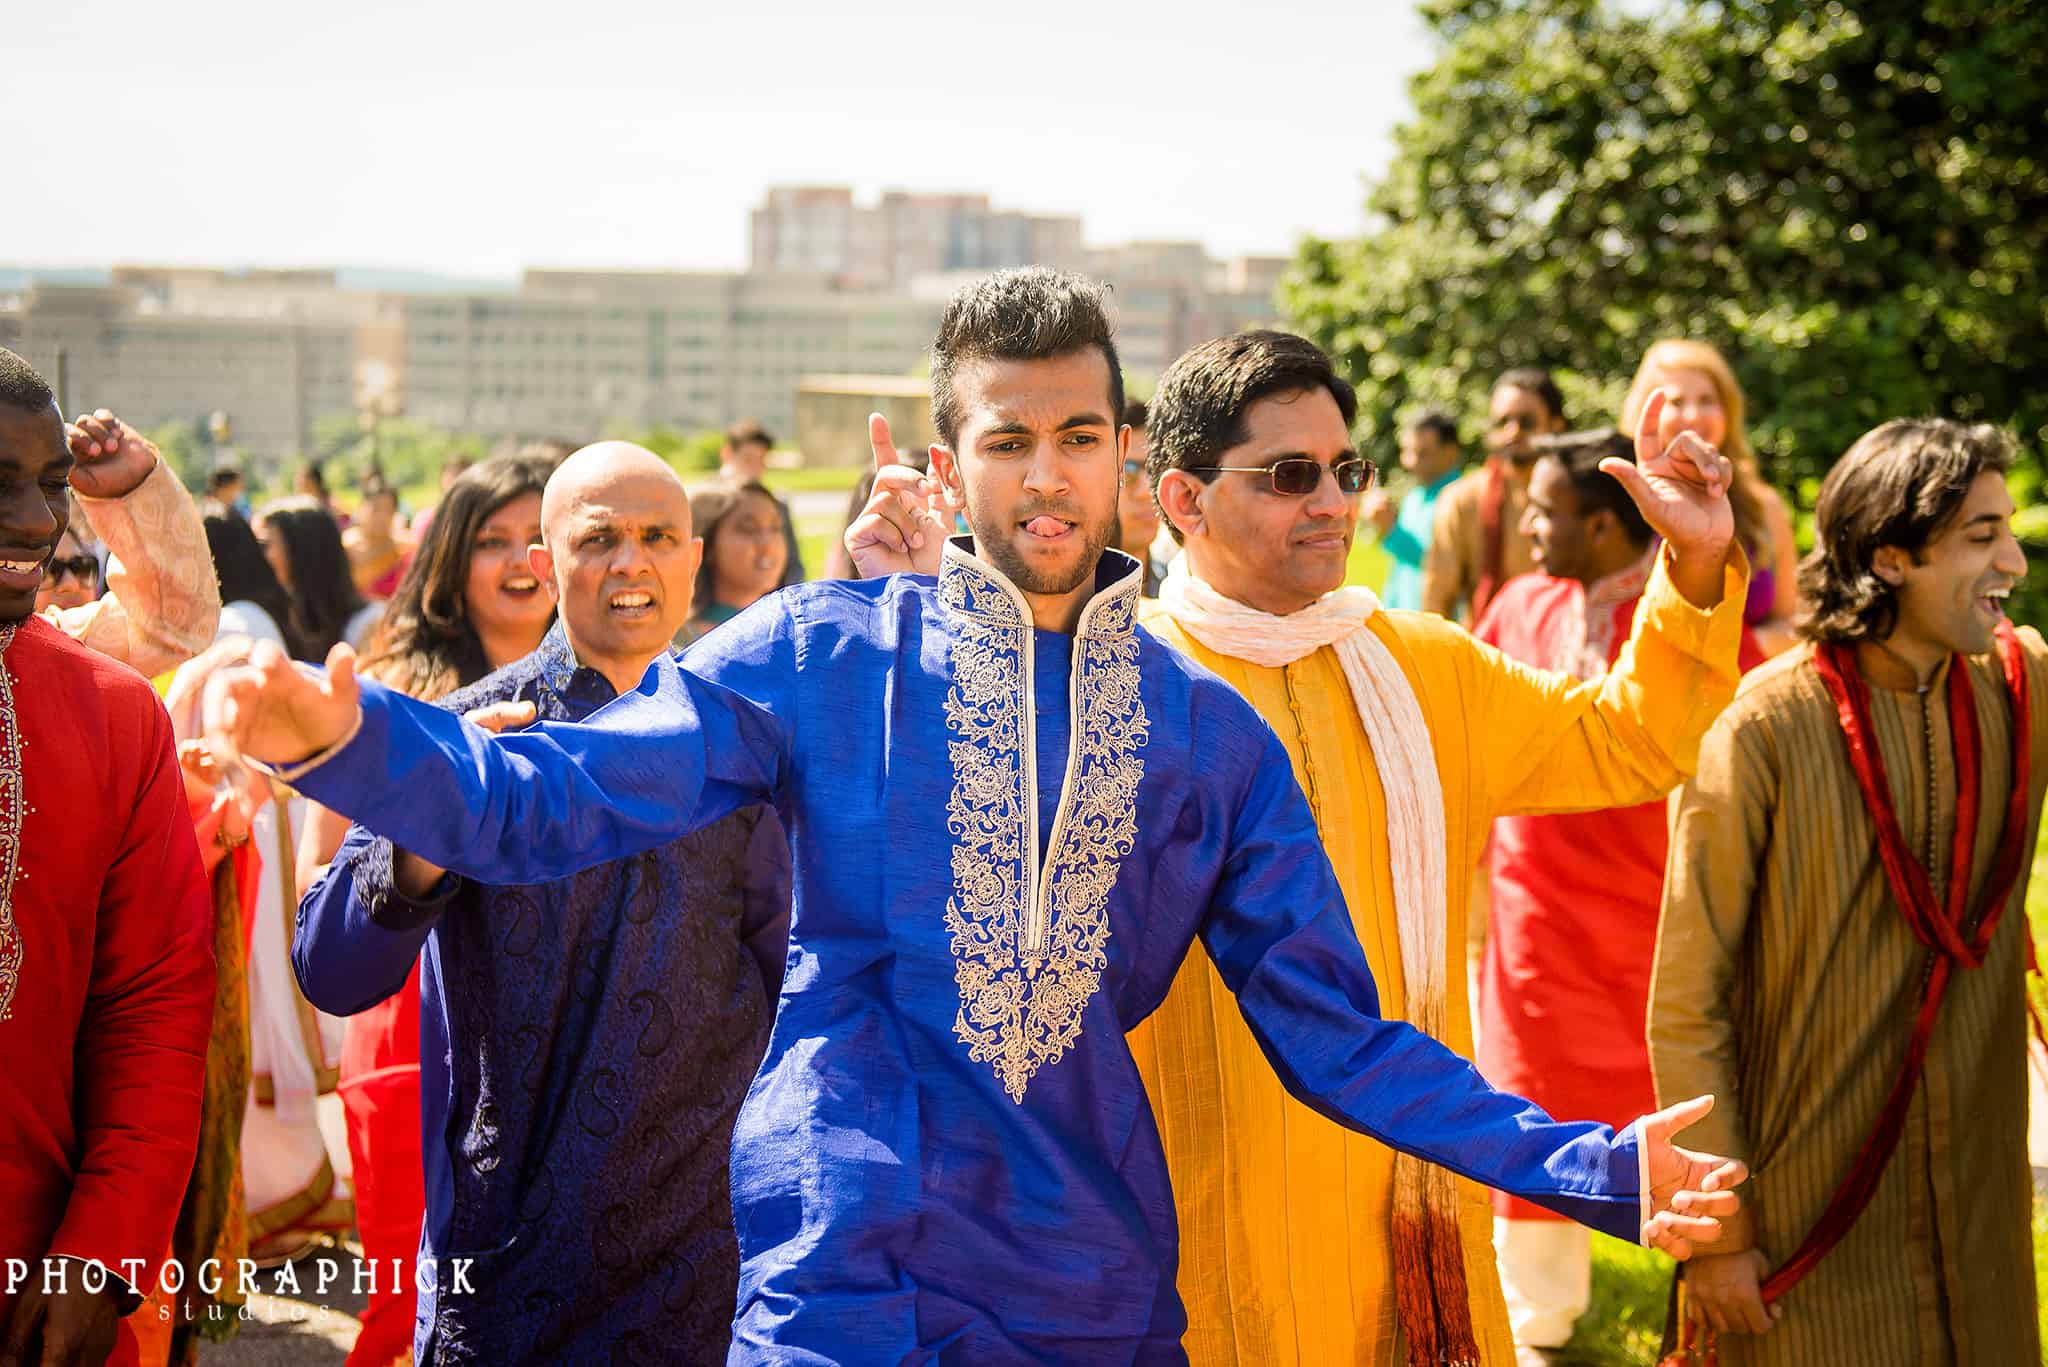 Washington DC Indian Wedding, Washington DC Wedding Photography, Washington DC Interfaith Wedding